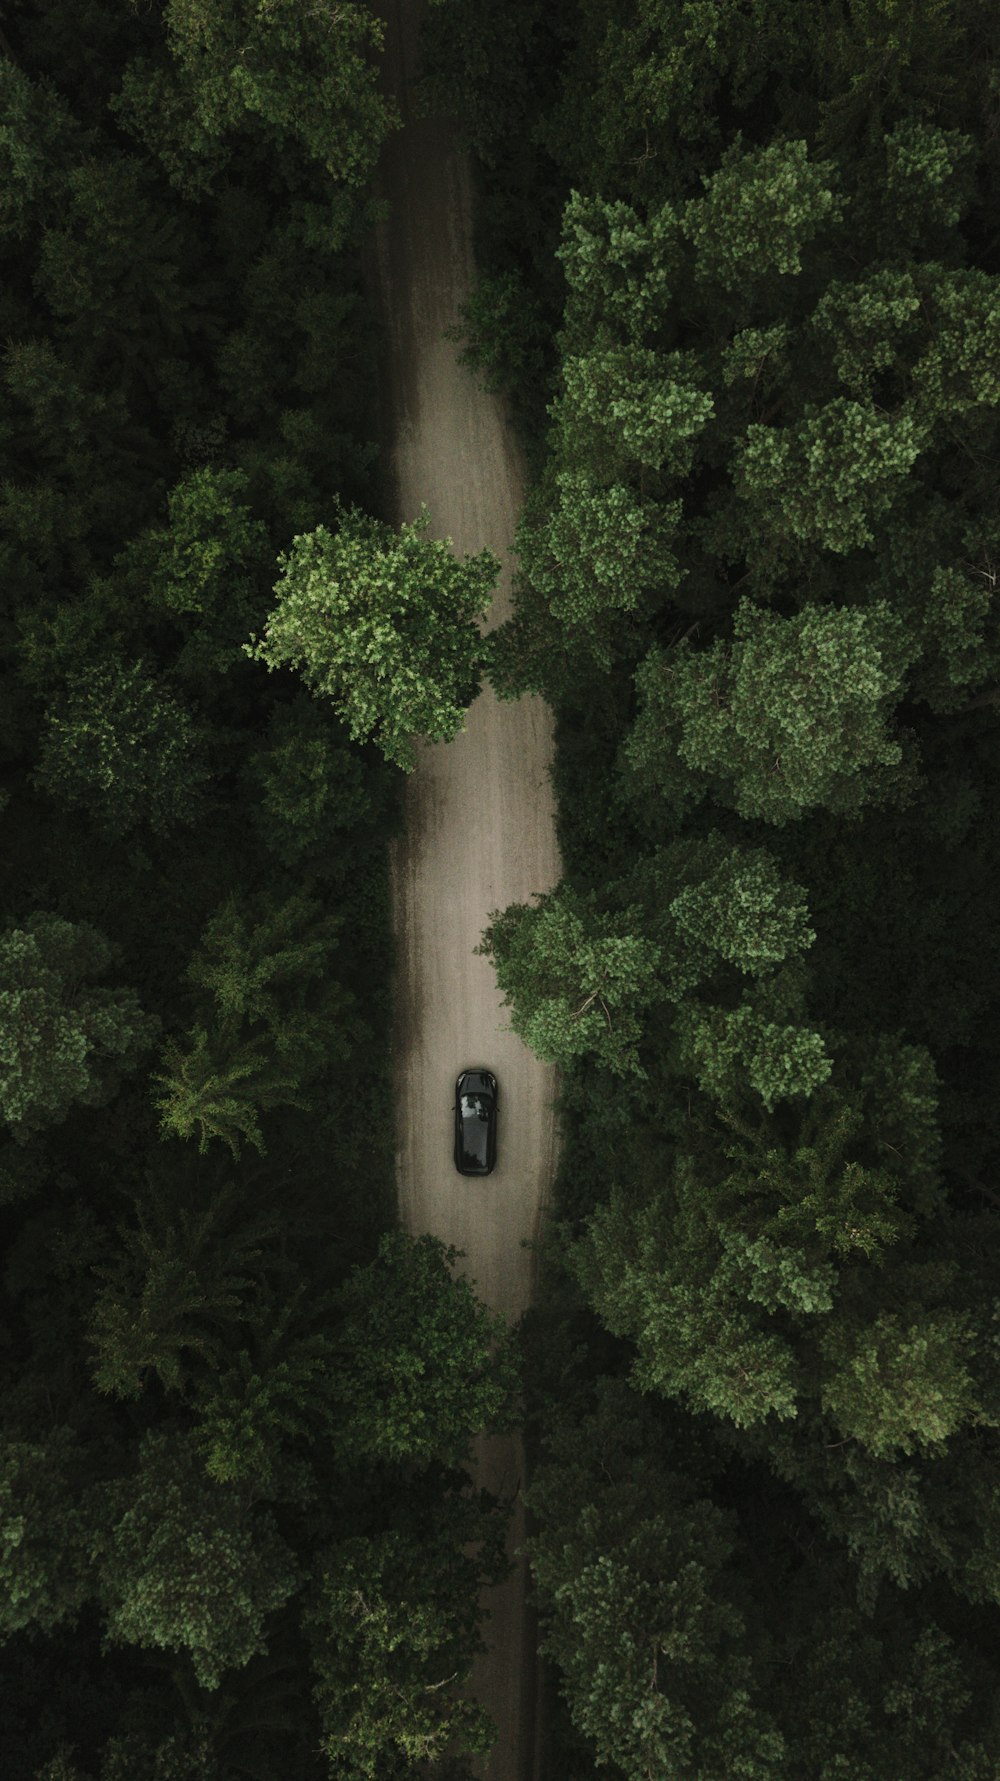 Coche negro en la carretera cerca de árboles verdes durante el día